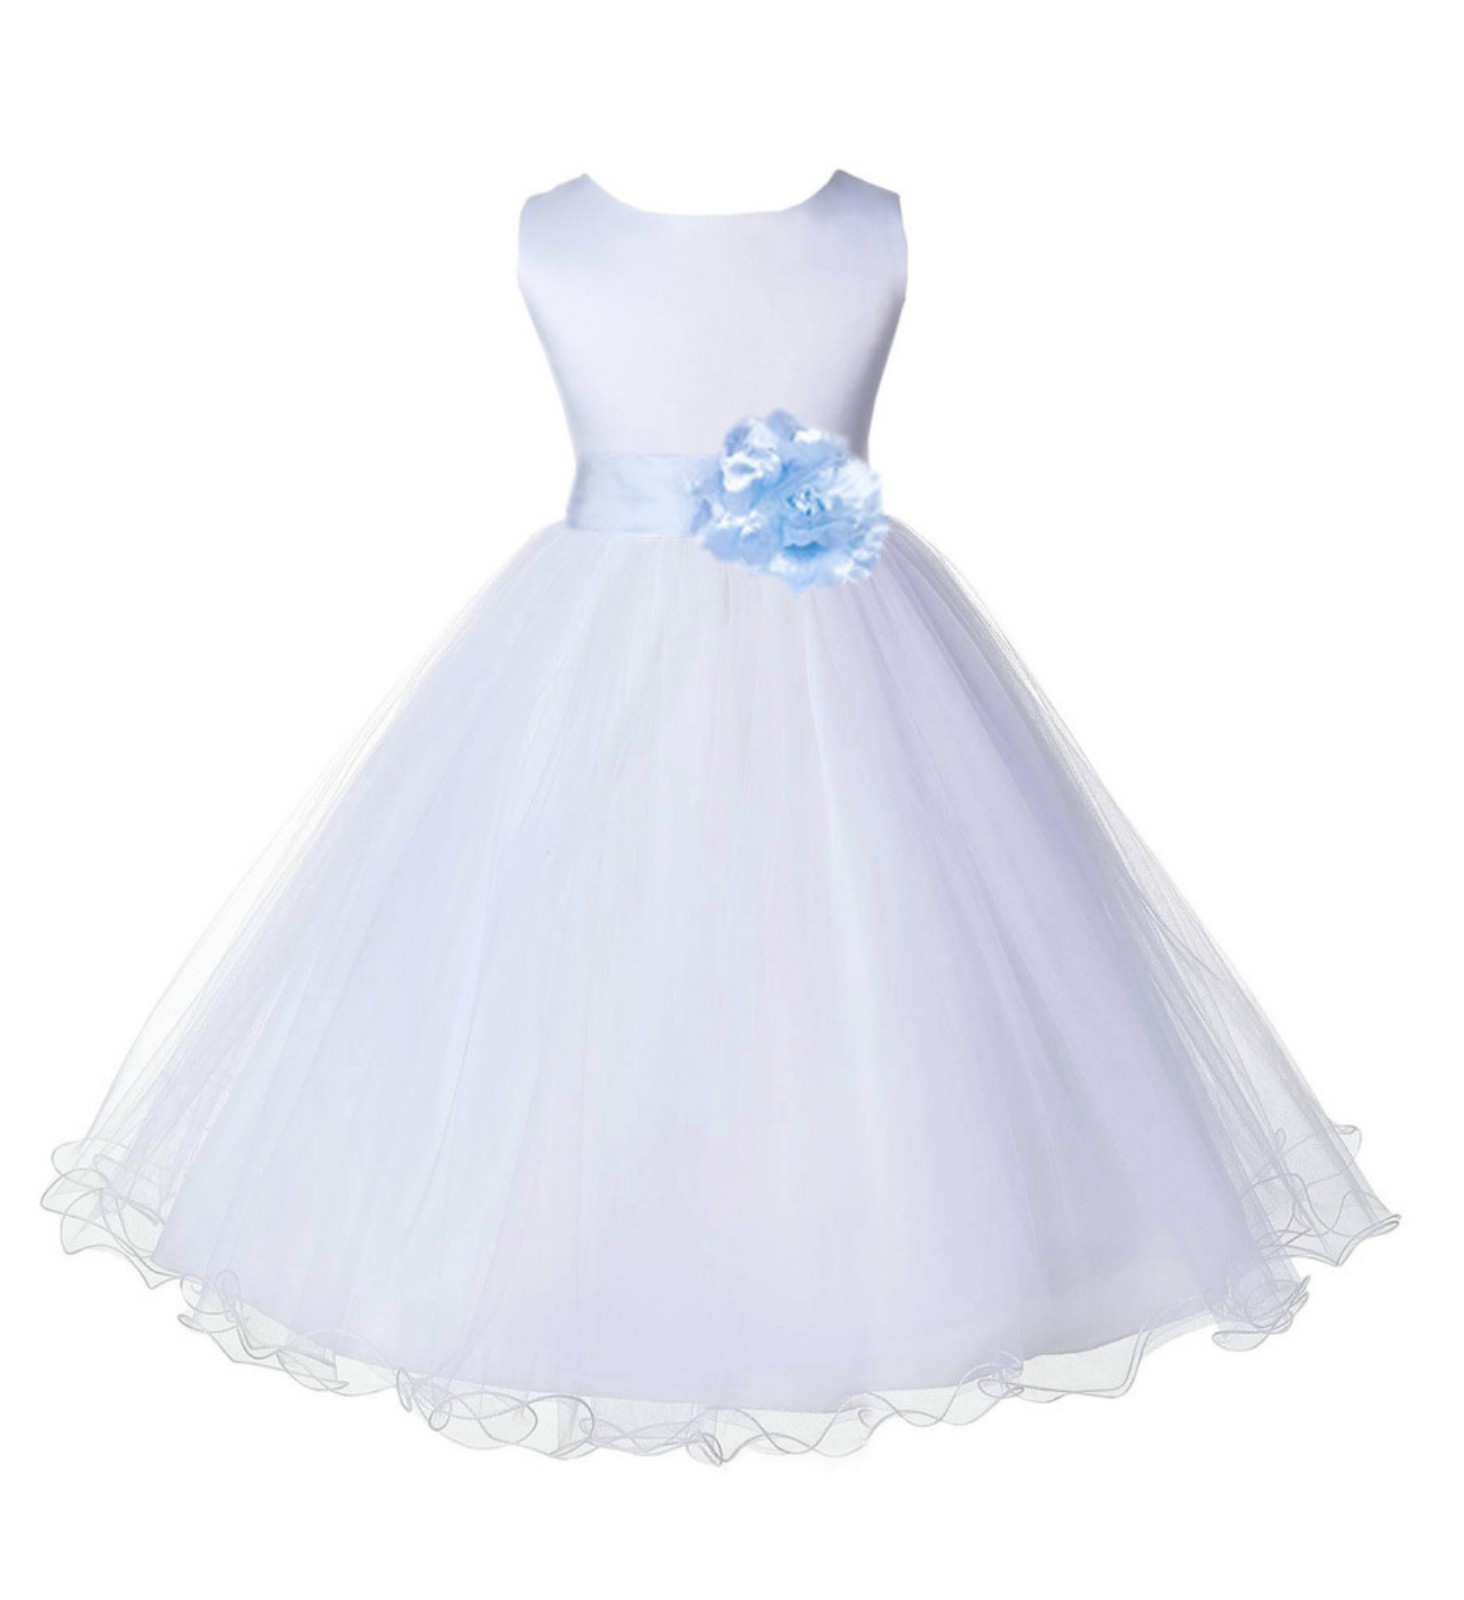 White/Ice Blue Tulle Rattail Edge Flower Girl Dress Wedding Bridal 829S